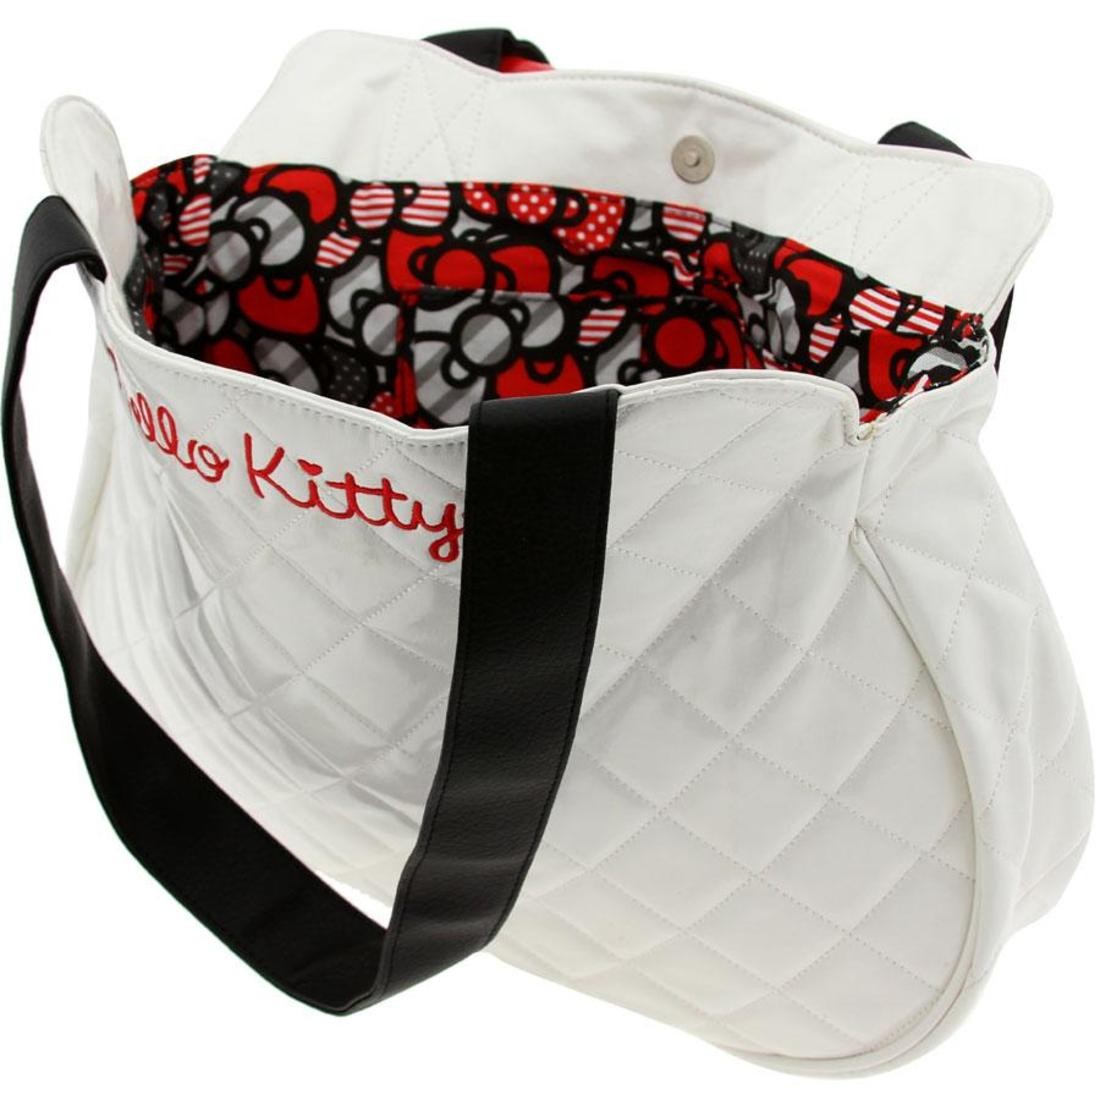 Kawaii Sanrios Hello Kitty Soft Plush Bag Jk Lolita Girls Fashion Coin Purse  Student Warm Fluffy Kt Cat Casual Shoulder Handbag